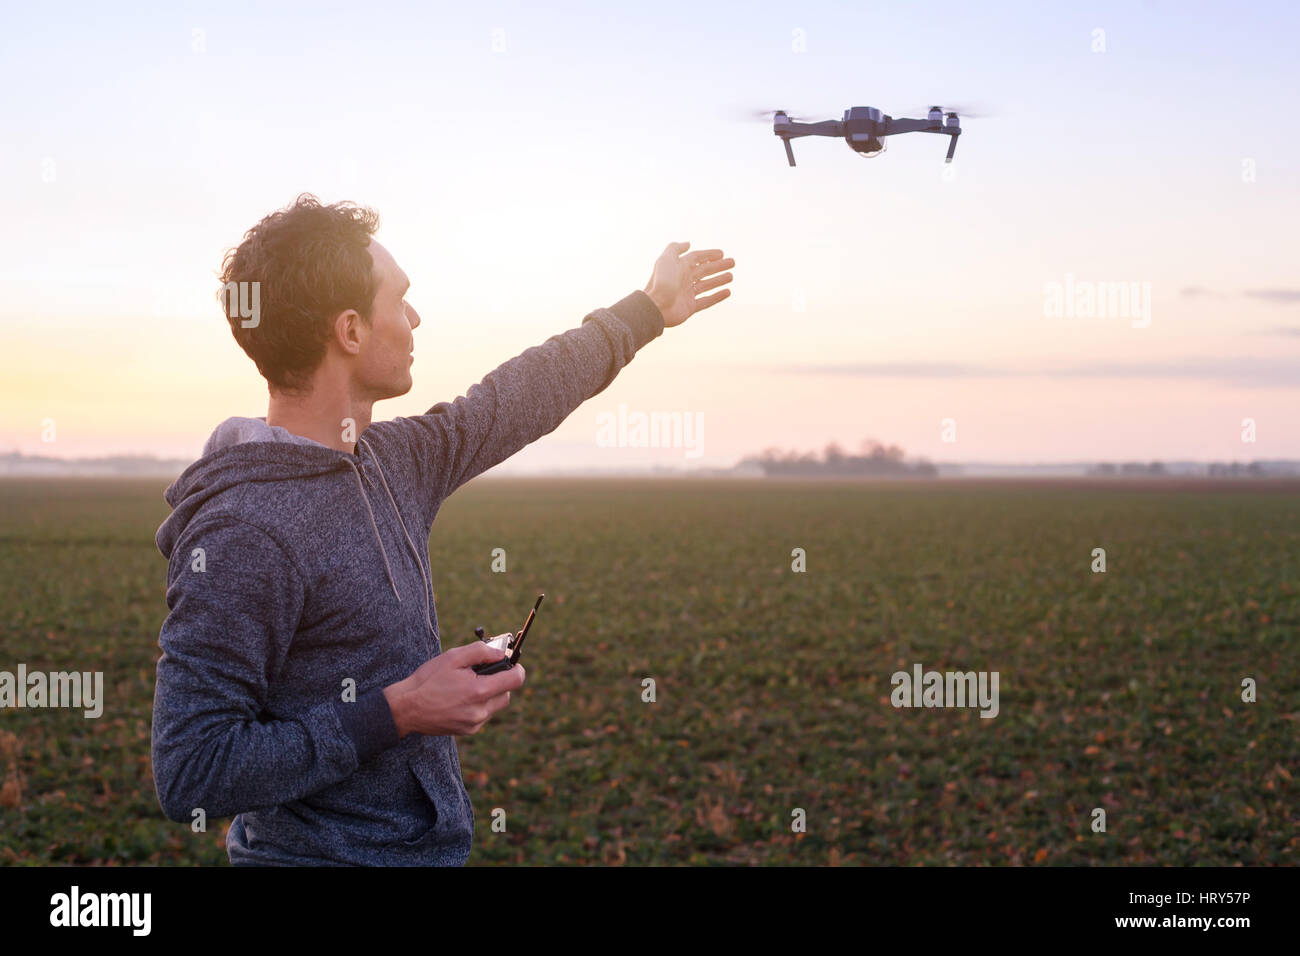 Pilotage de l'homme, l'homme et de la technologie du drone de la communication Banque D'Images